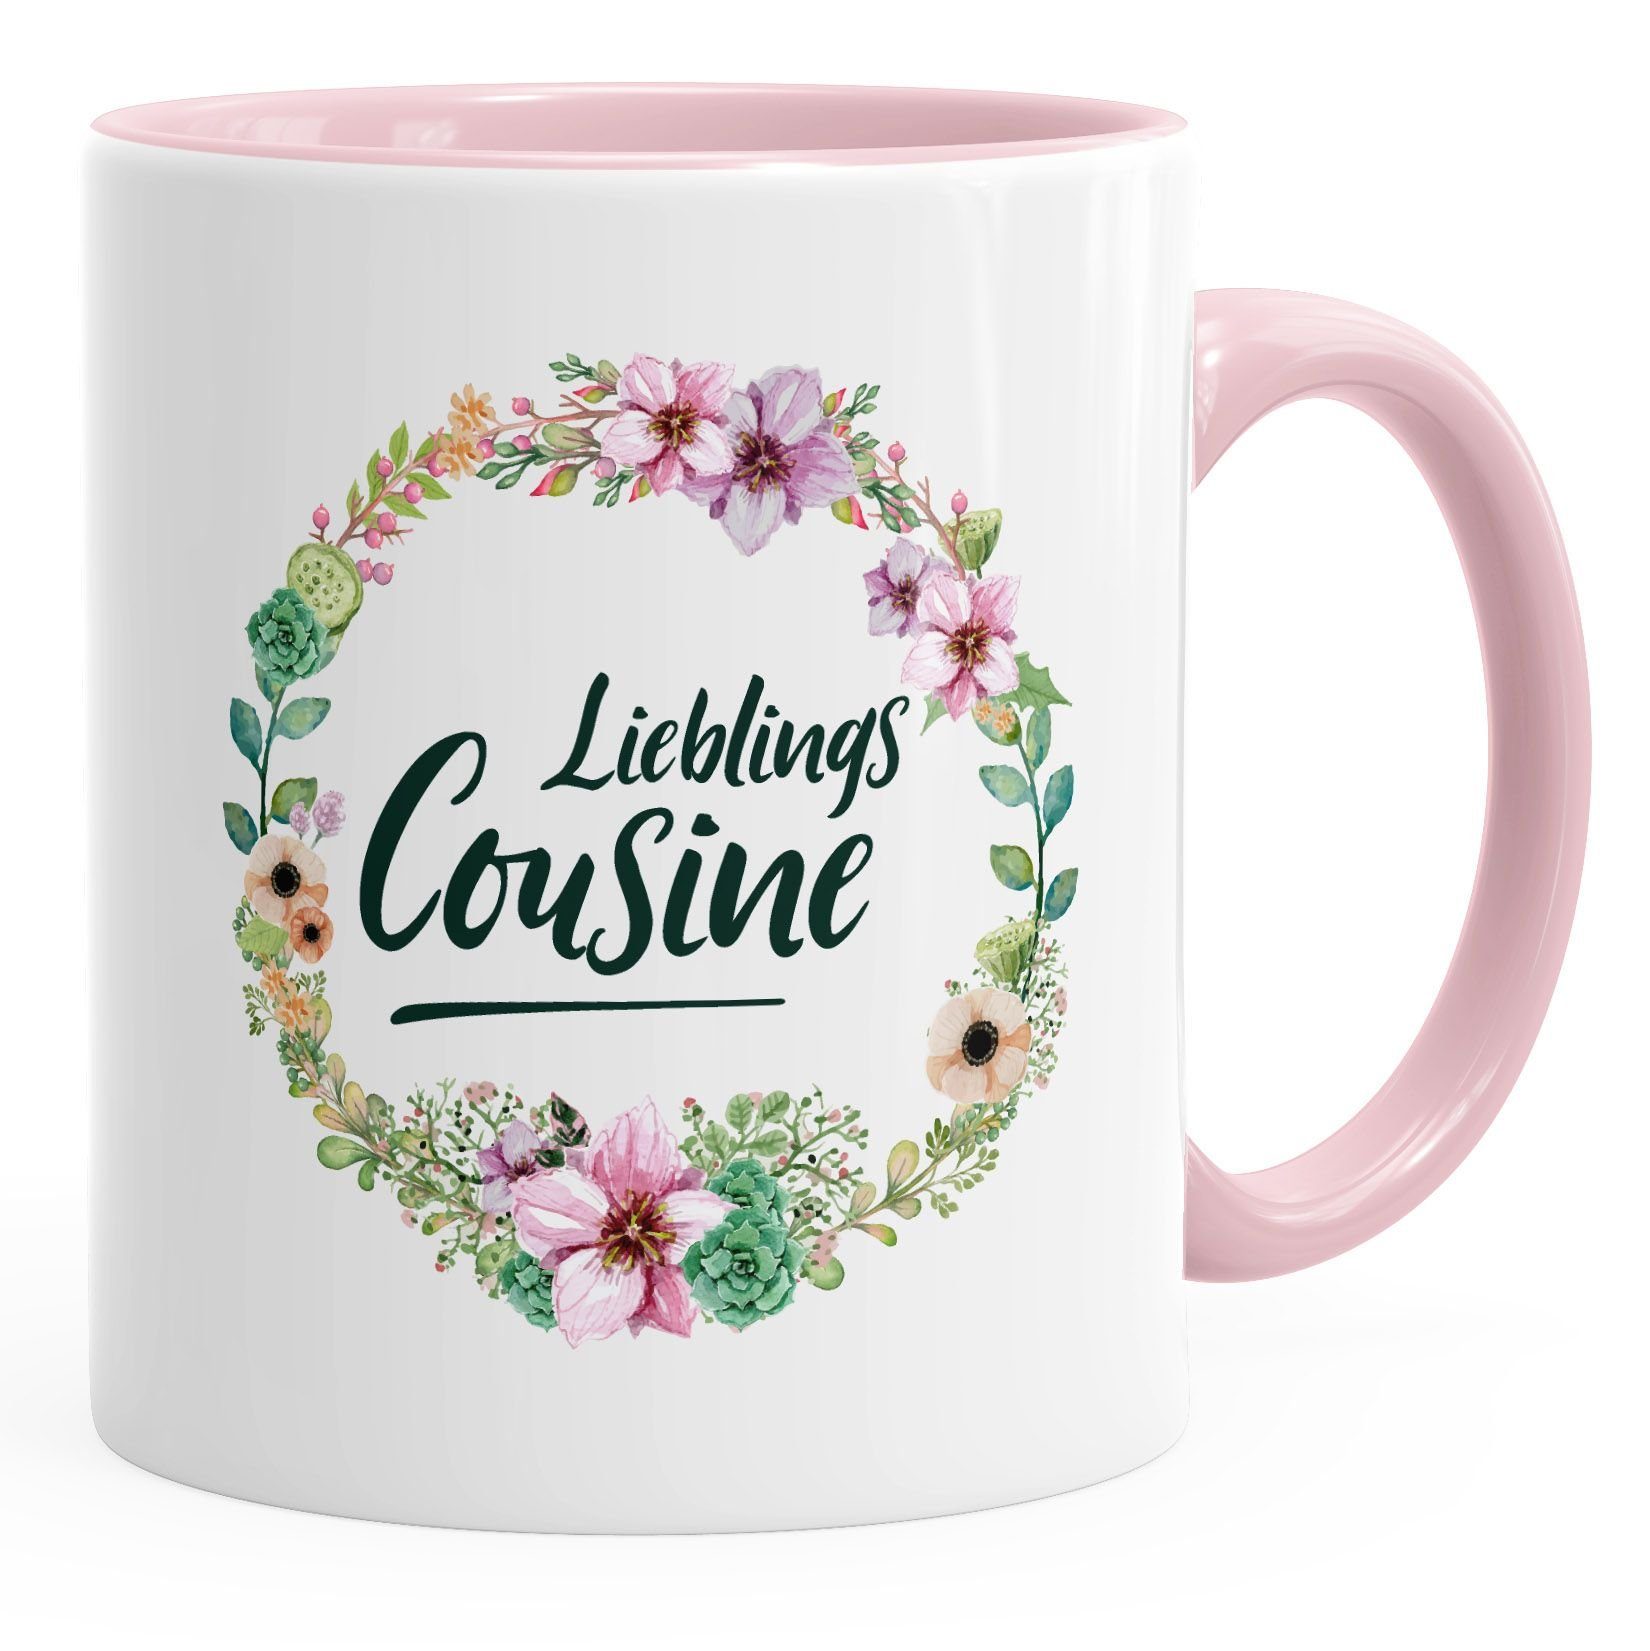 MoonWorks Tasse Kaffee-Tasse Geschenktasse Geschenk für Cousine Lieblingscousine Blumen Bordüre Blumenranke Blüten Familie MoonWorks®, Keramik rosa | Tassen